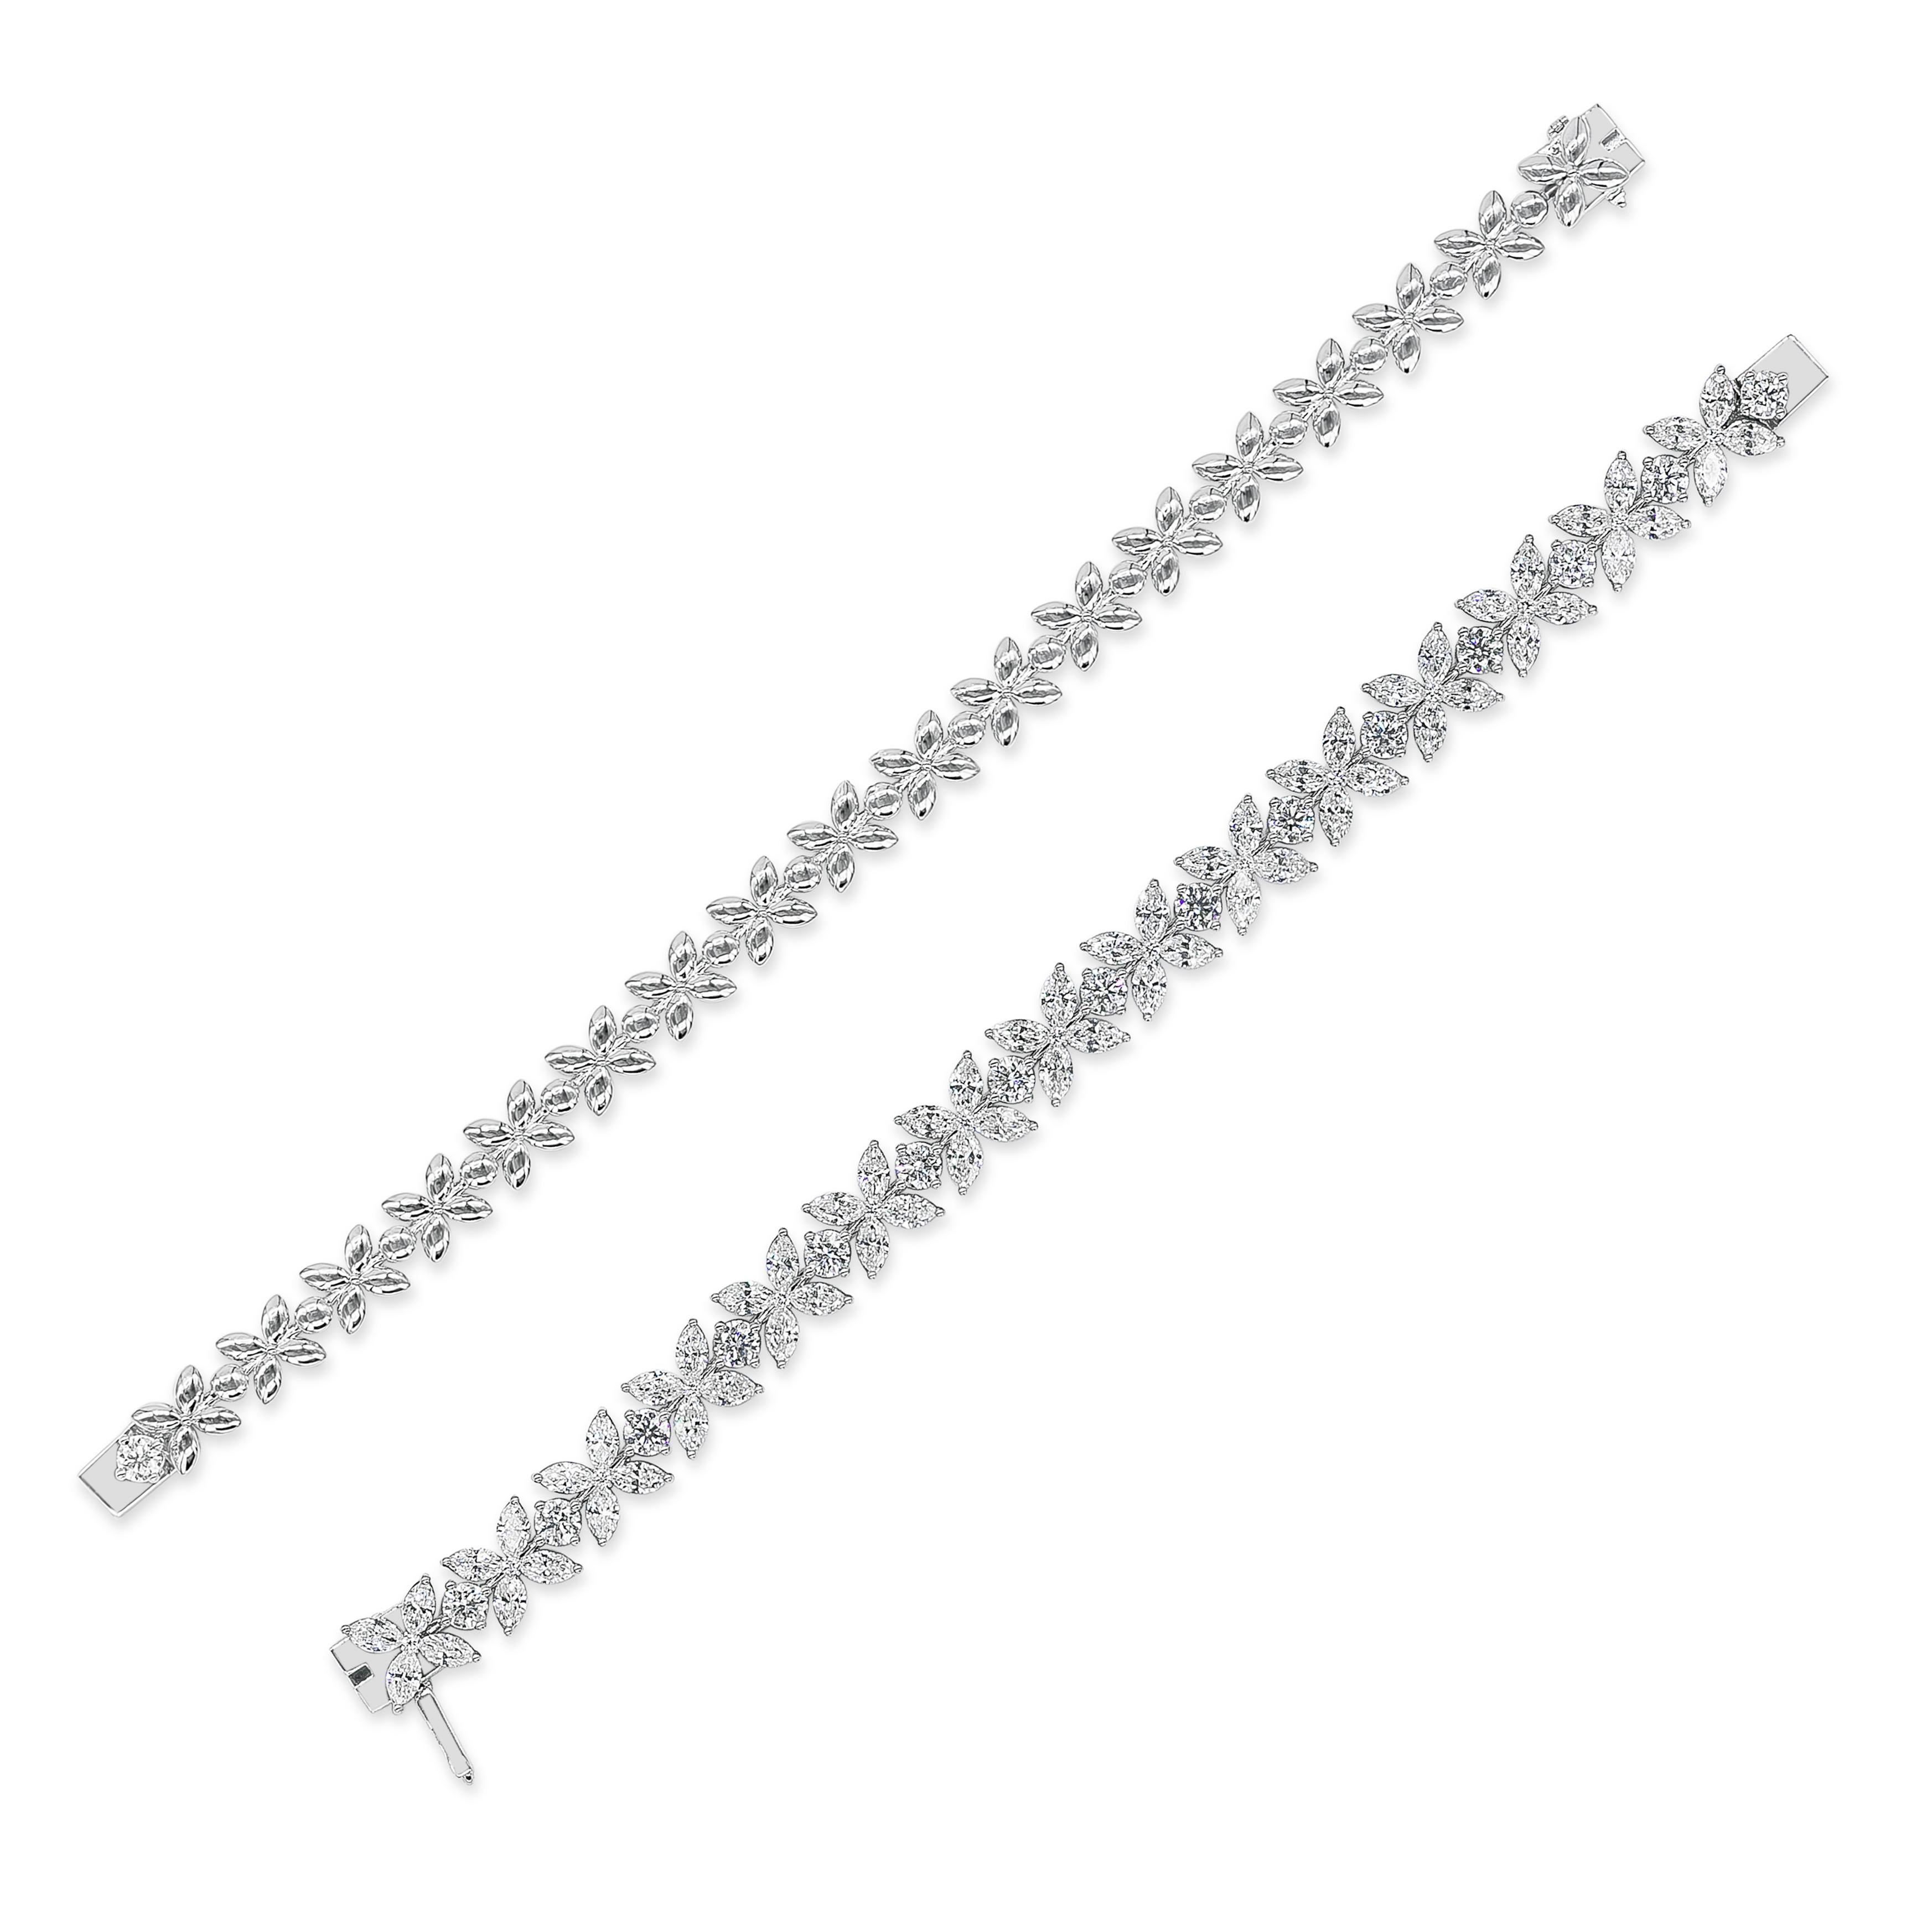 Brilliant Cut Roman Malakov 16.92 Carats Total Diamond Floral Motif Bracelet Necklace For Sale